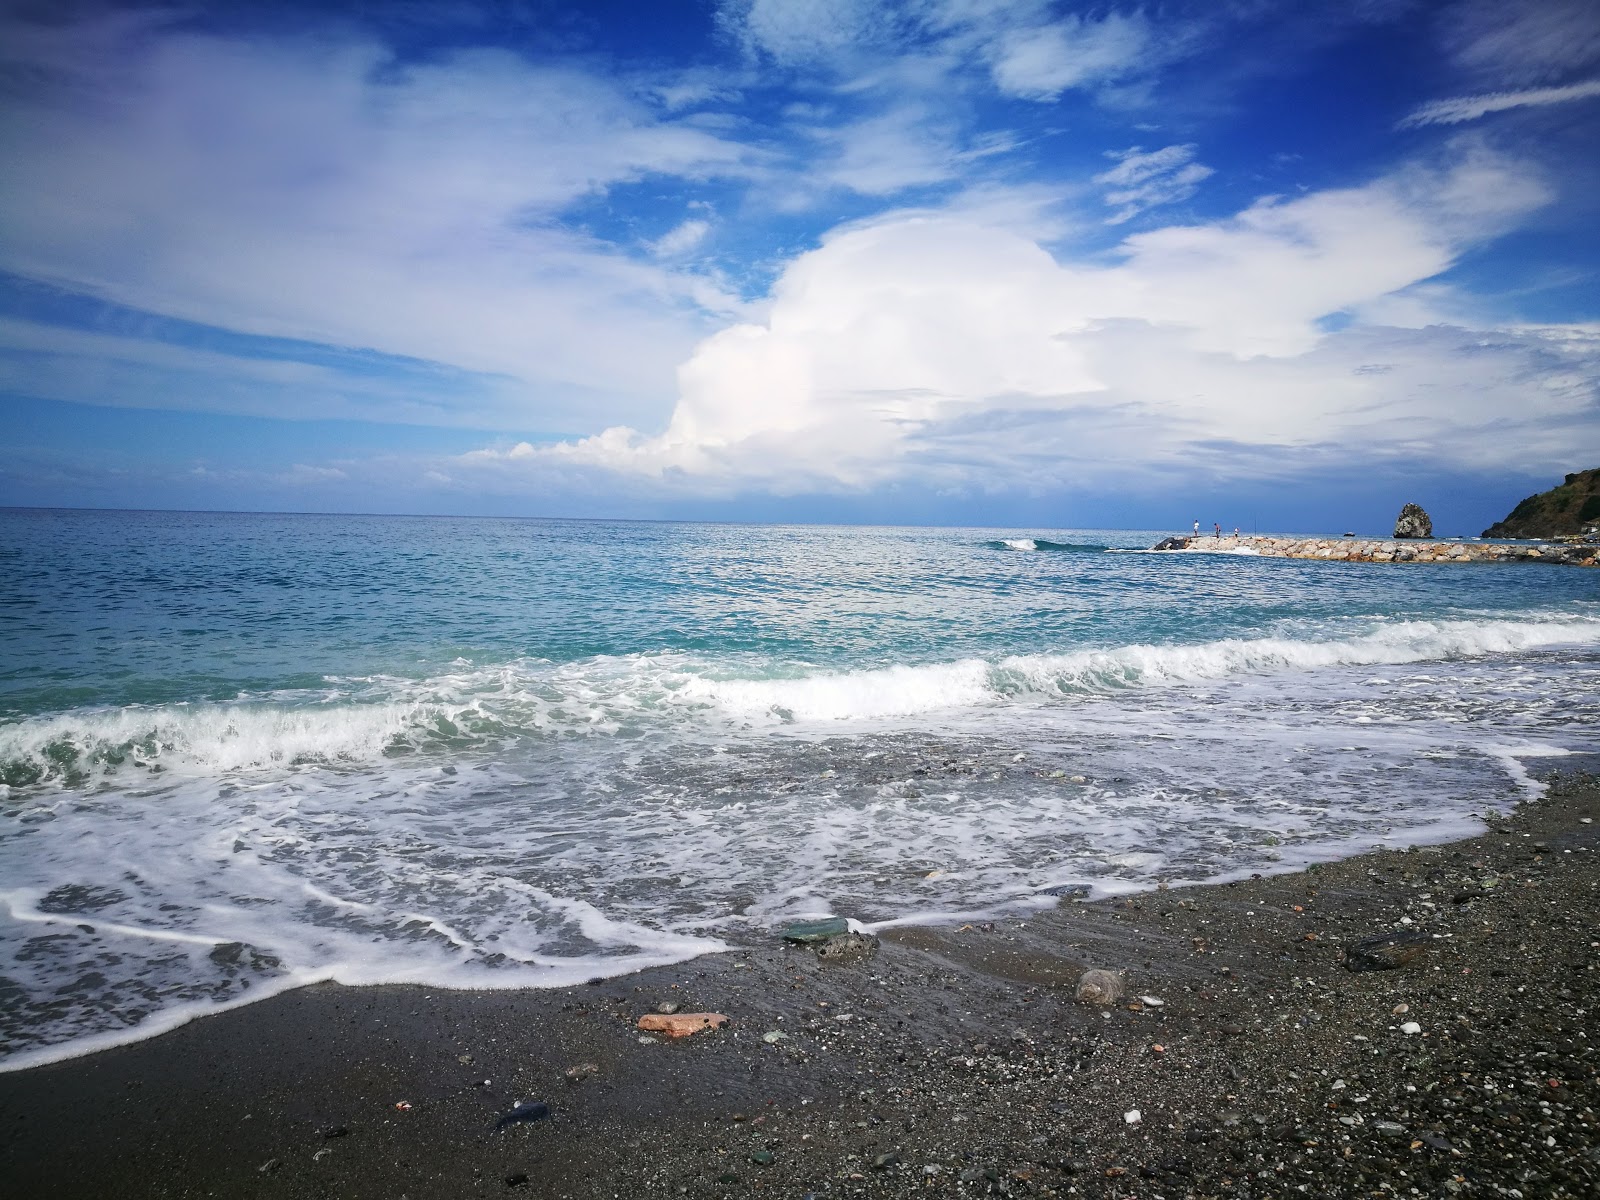 Photo de Nettuno beach - endroit populaire parmi les connaisseurs de la détente